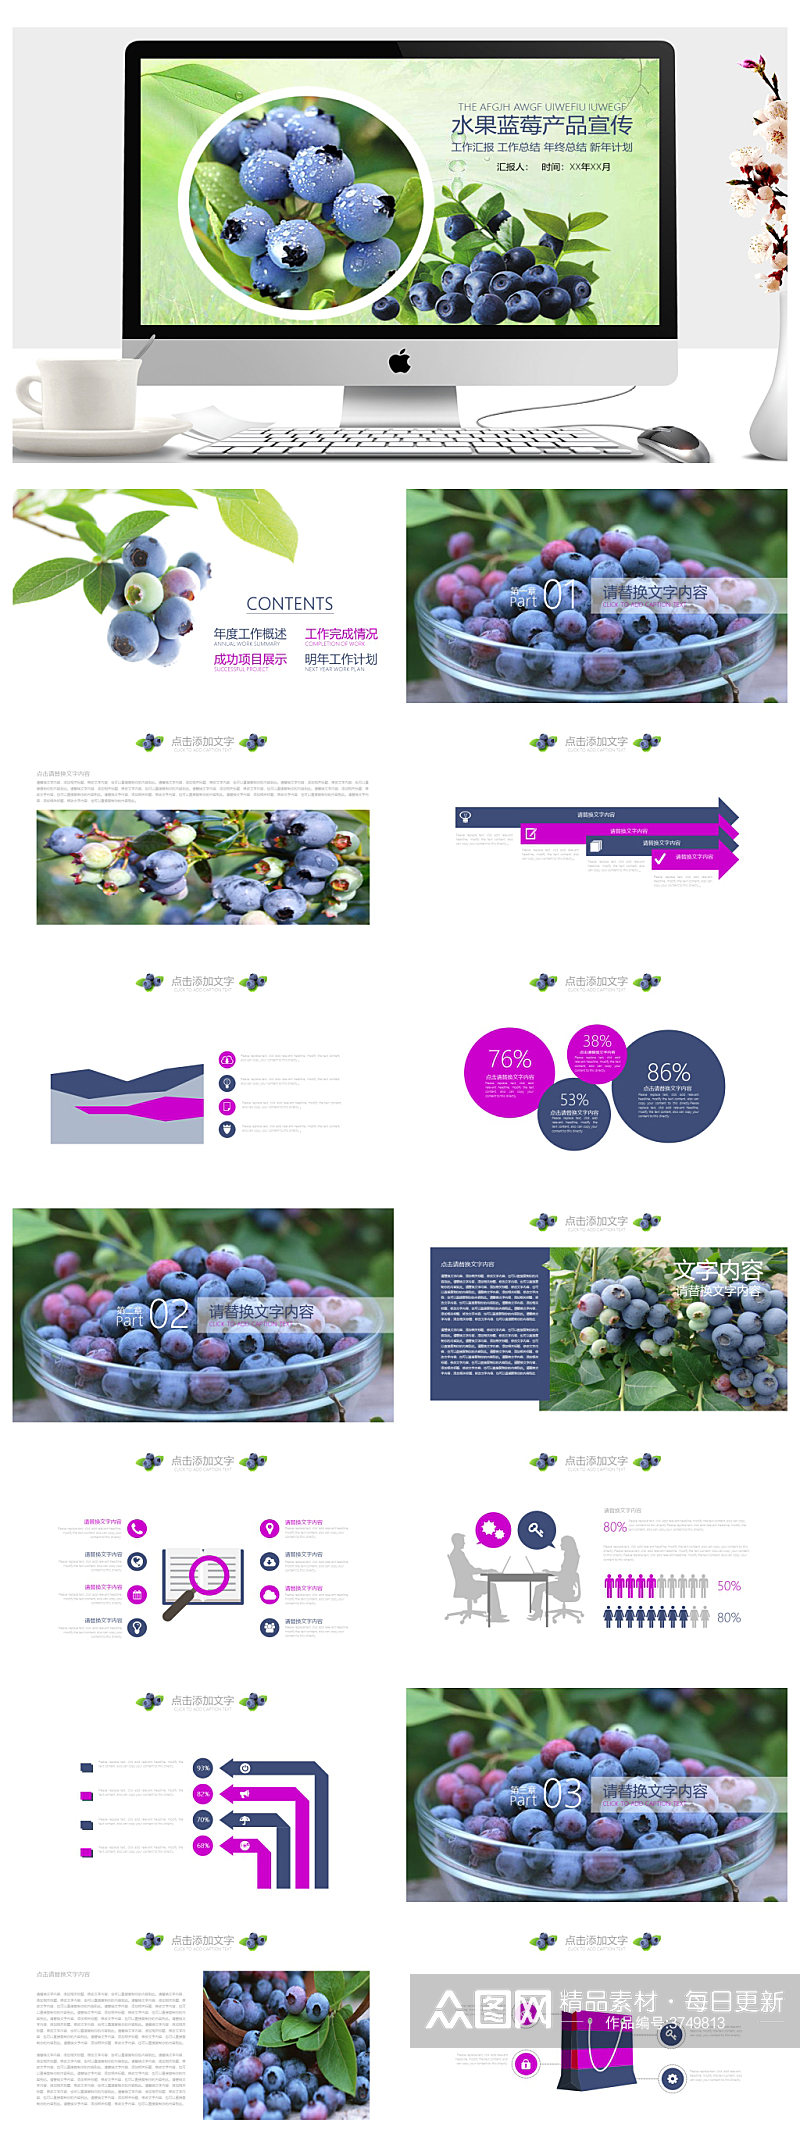 水果蓝莓产品宣传工作汇报PPT素材